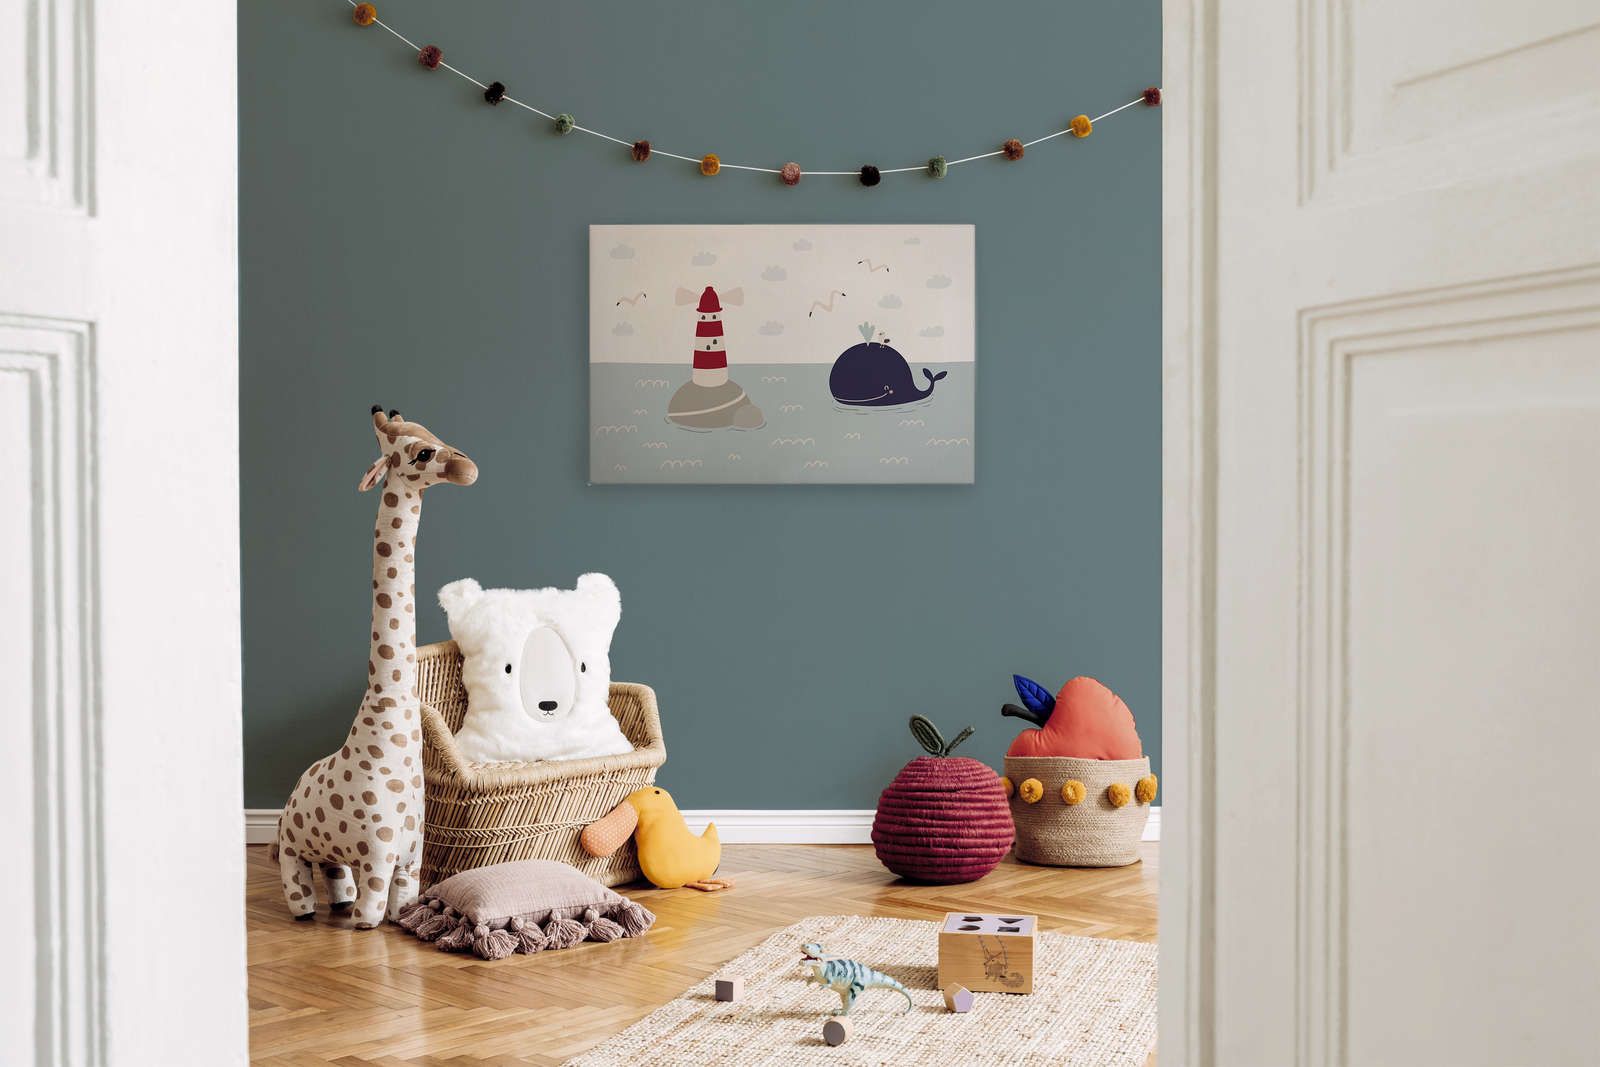             Lienzo para habitación infantil con faro y ballena - 90 cm x 60 cm
        